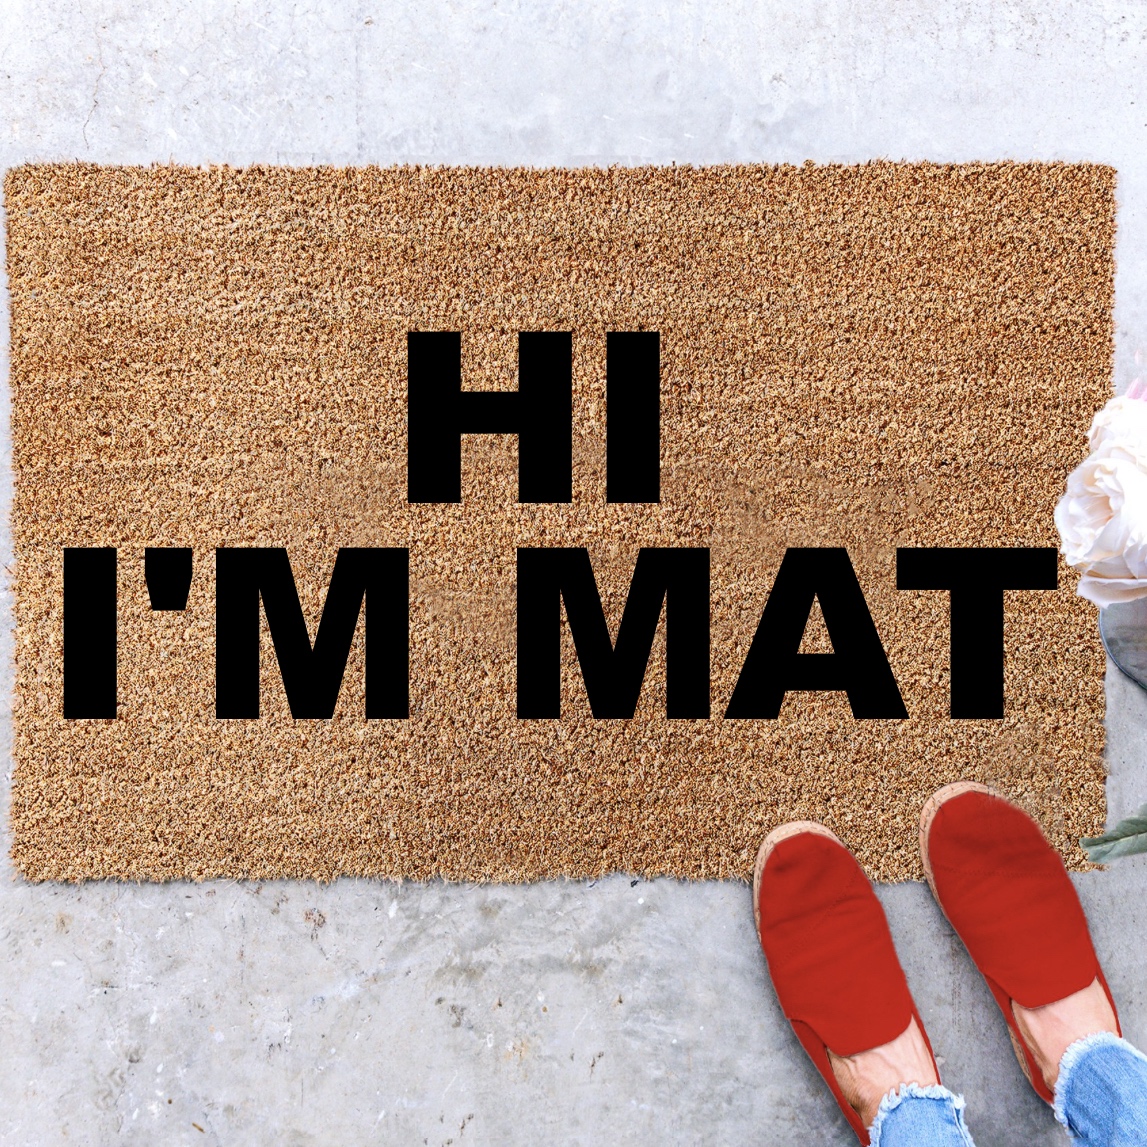 Hi I'm Mat Funny Front Door Mat